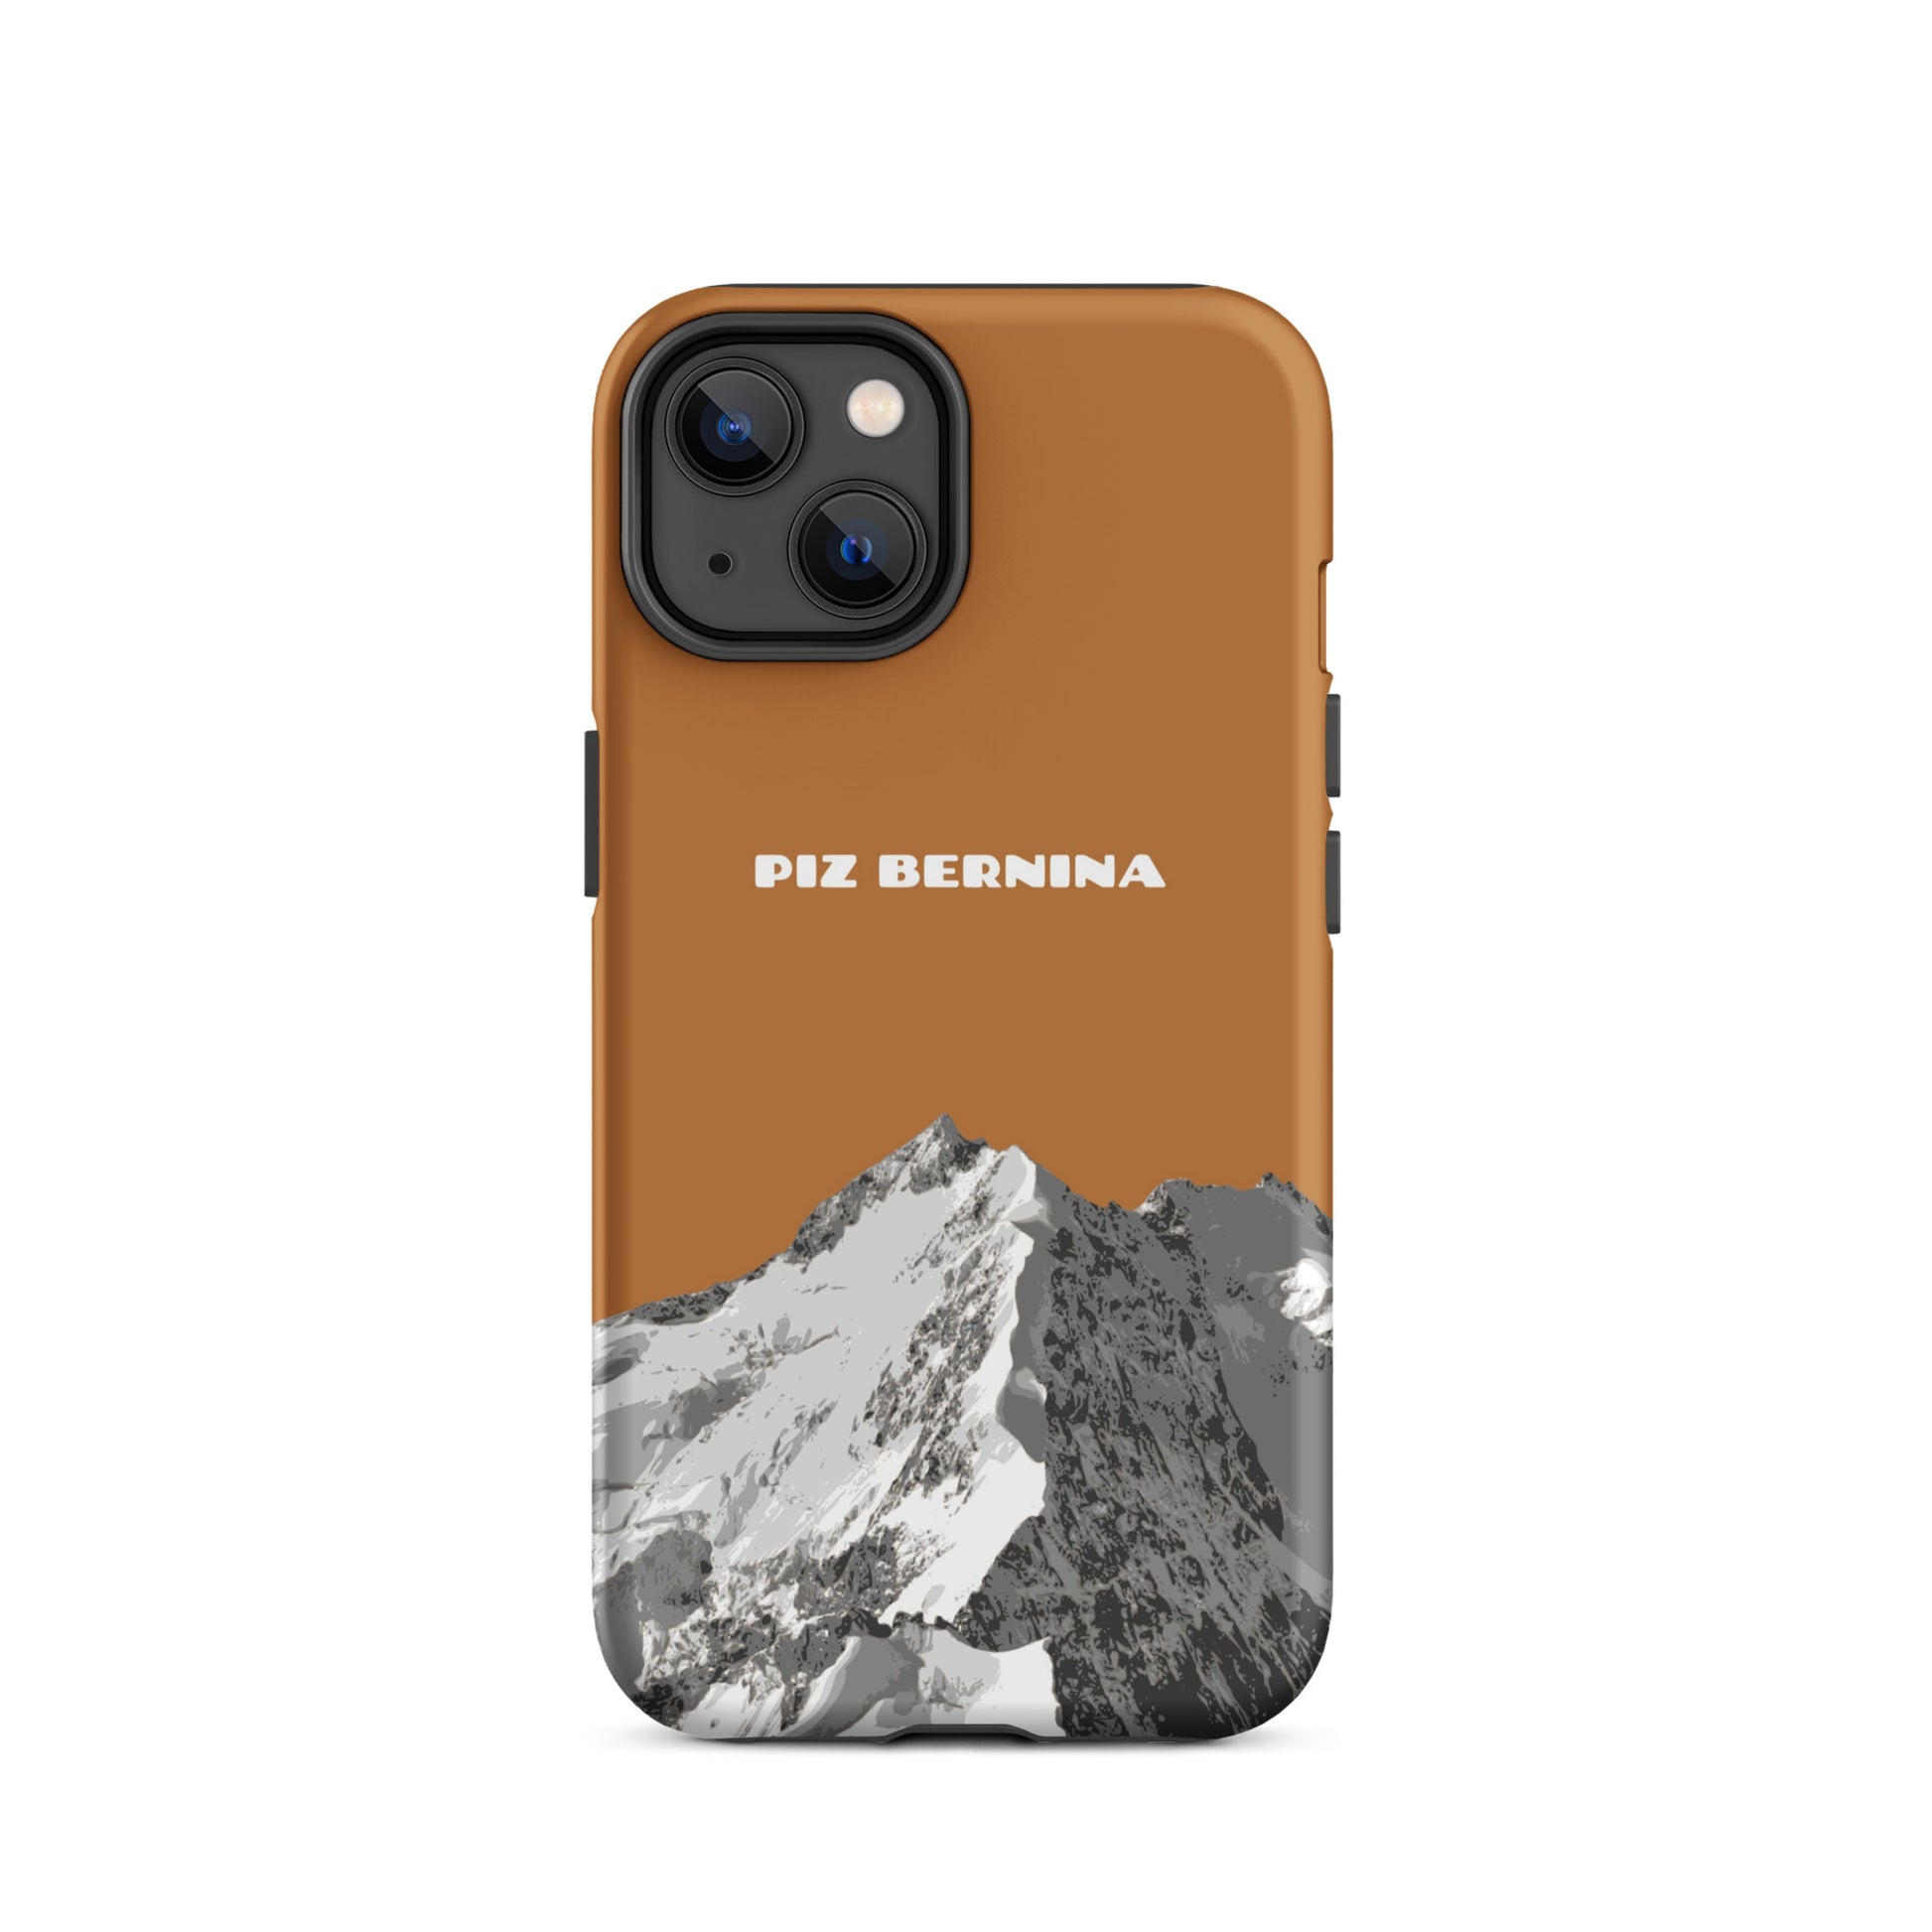 Hülle für das iPhone 14 von Apple in der Farbe Kupfer, dass den Piz Bernina in Graubünden zeigt.